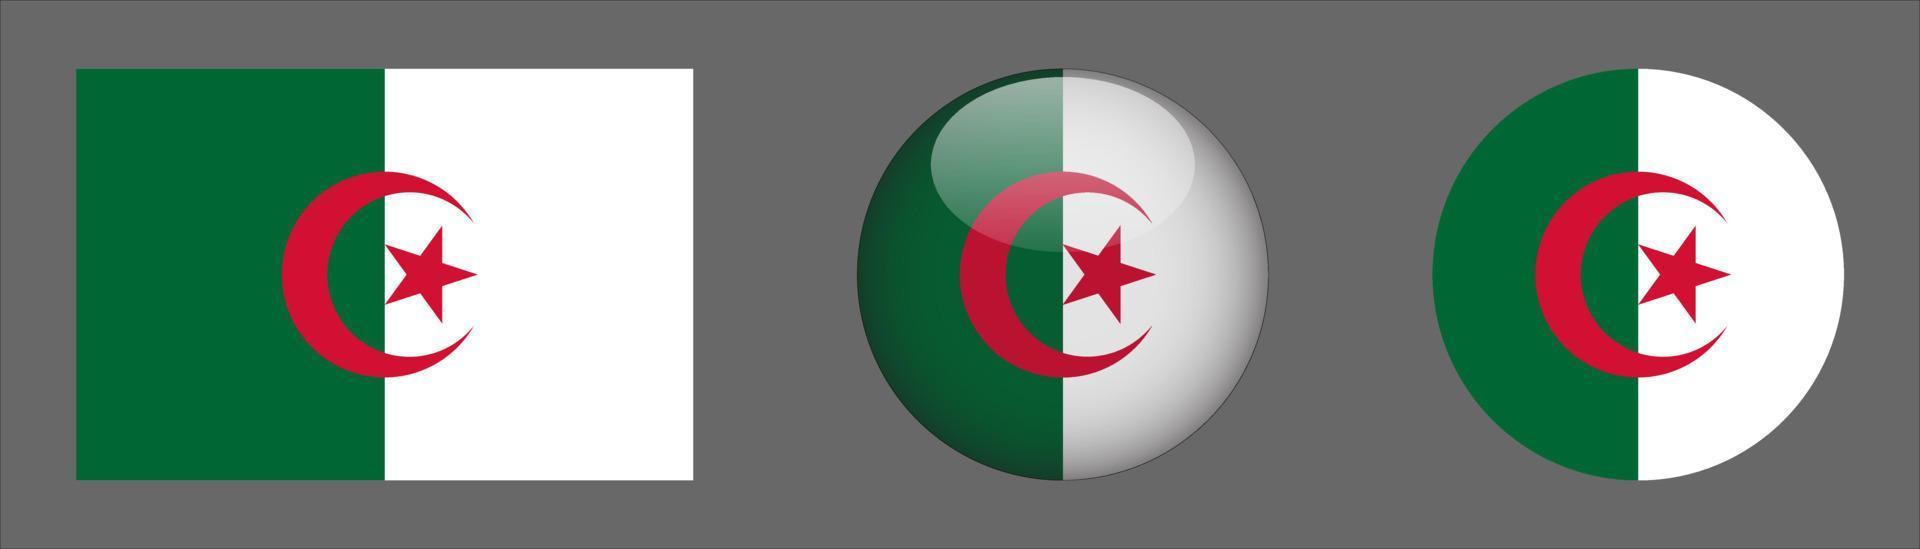 collection de jeu de drapeau algérie, original vecteur